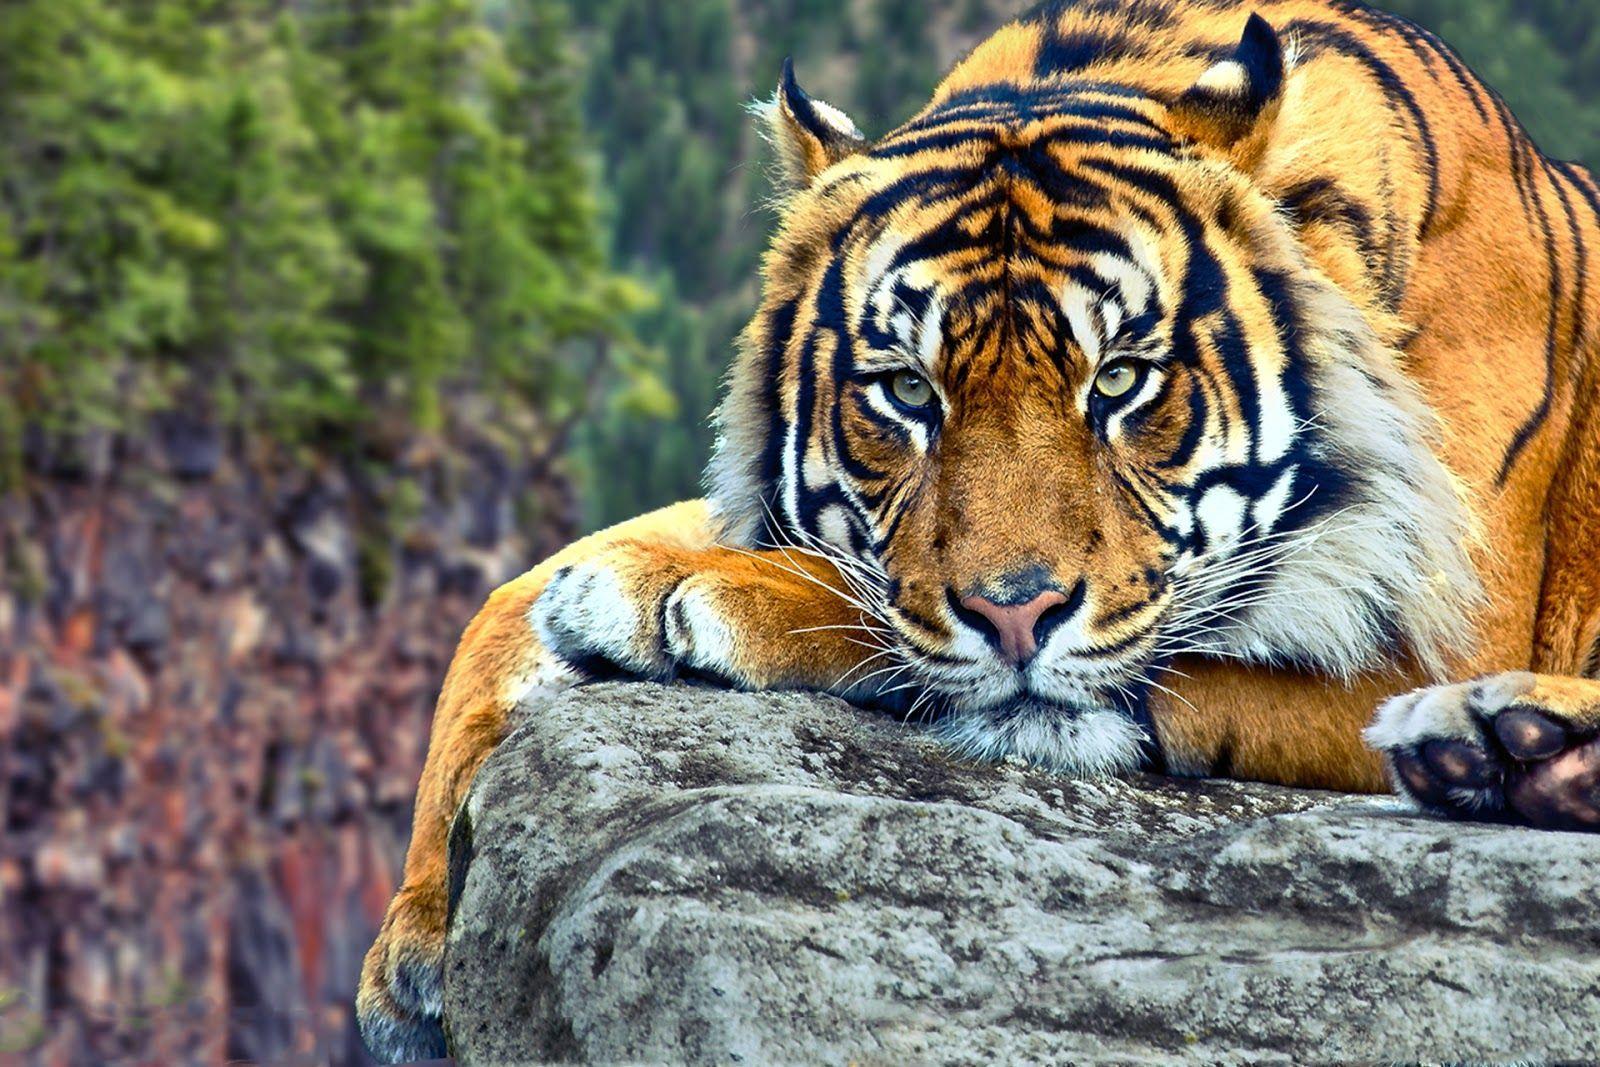 Tiger Desktop Backgrounds - Wallpaper Cave